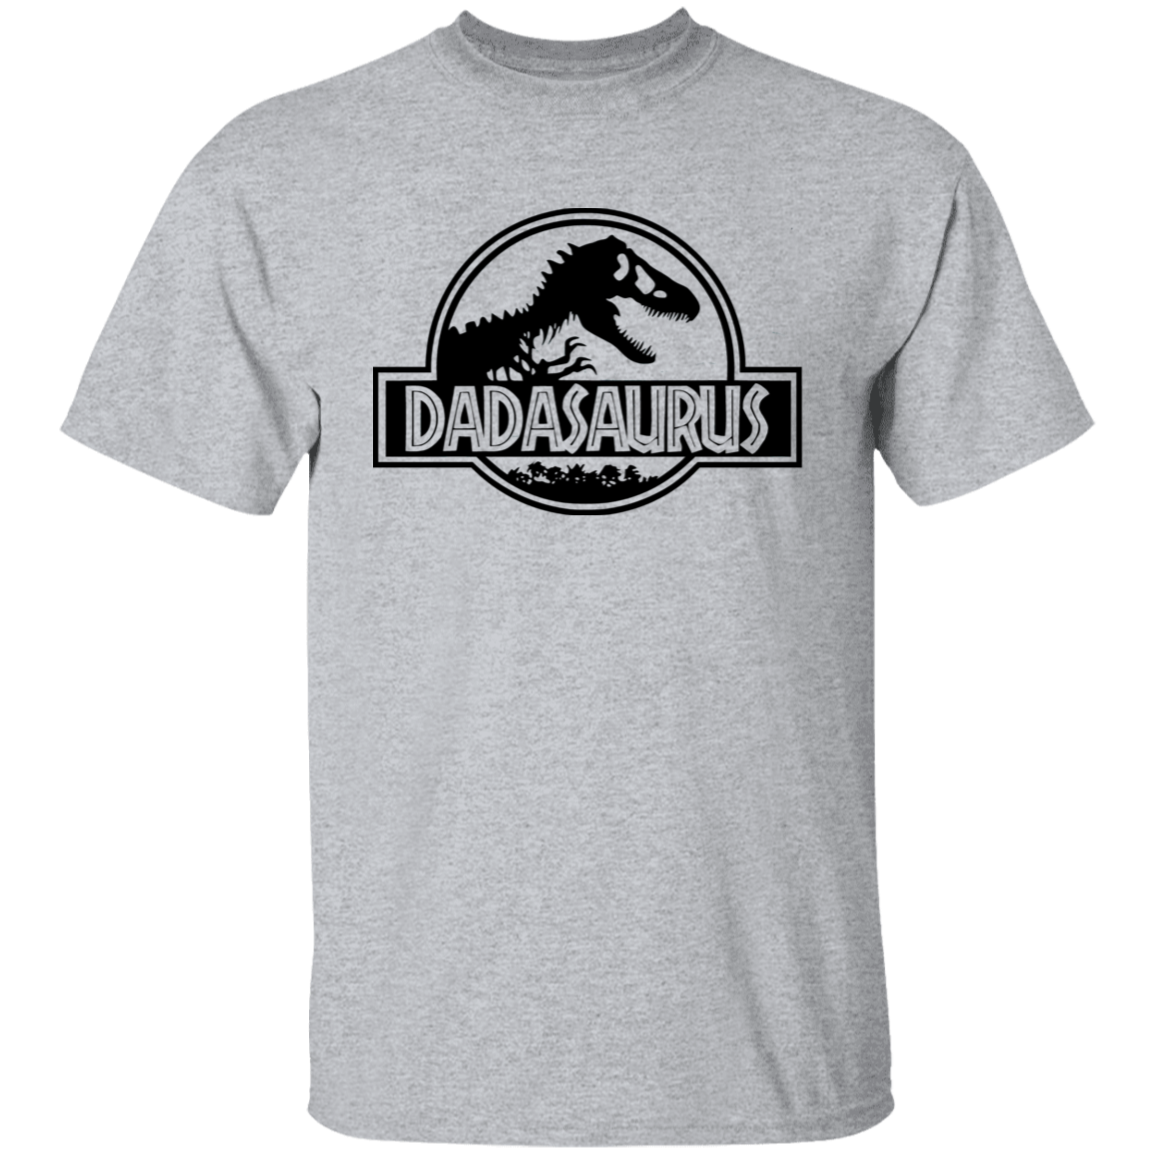 Daddy Saurus, T-Rex Dad Unisex T-Shirt, Sweatshirt, Hoodie